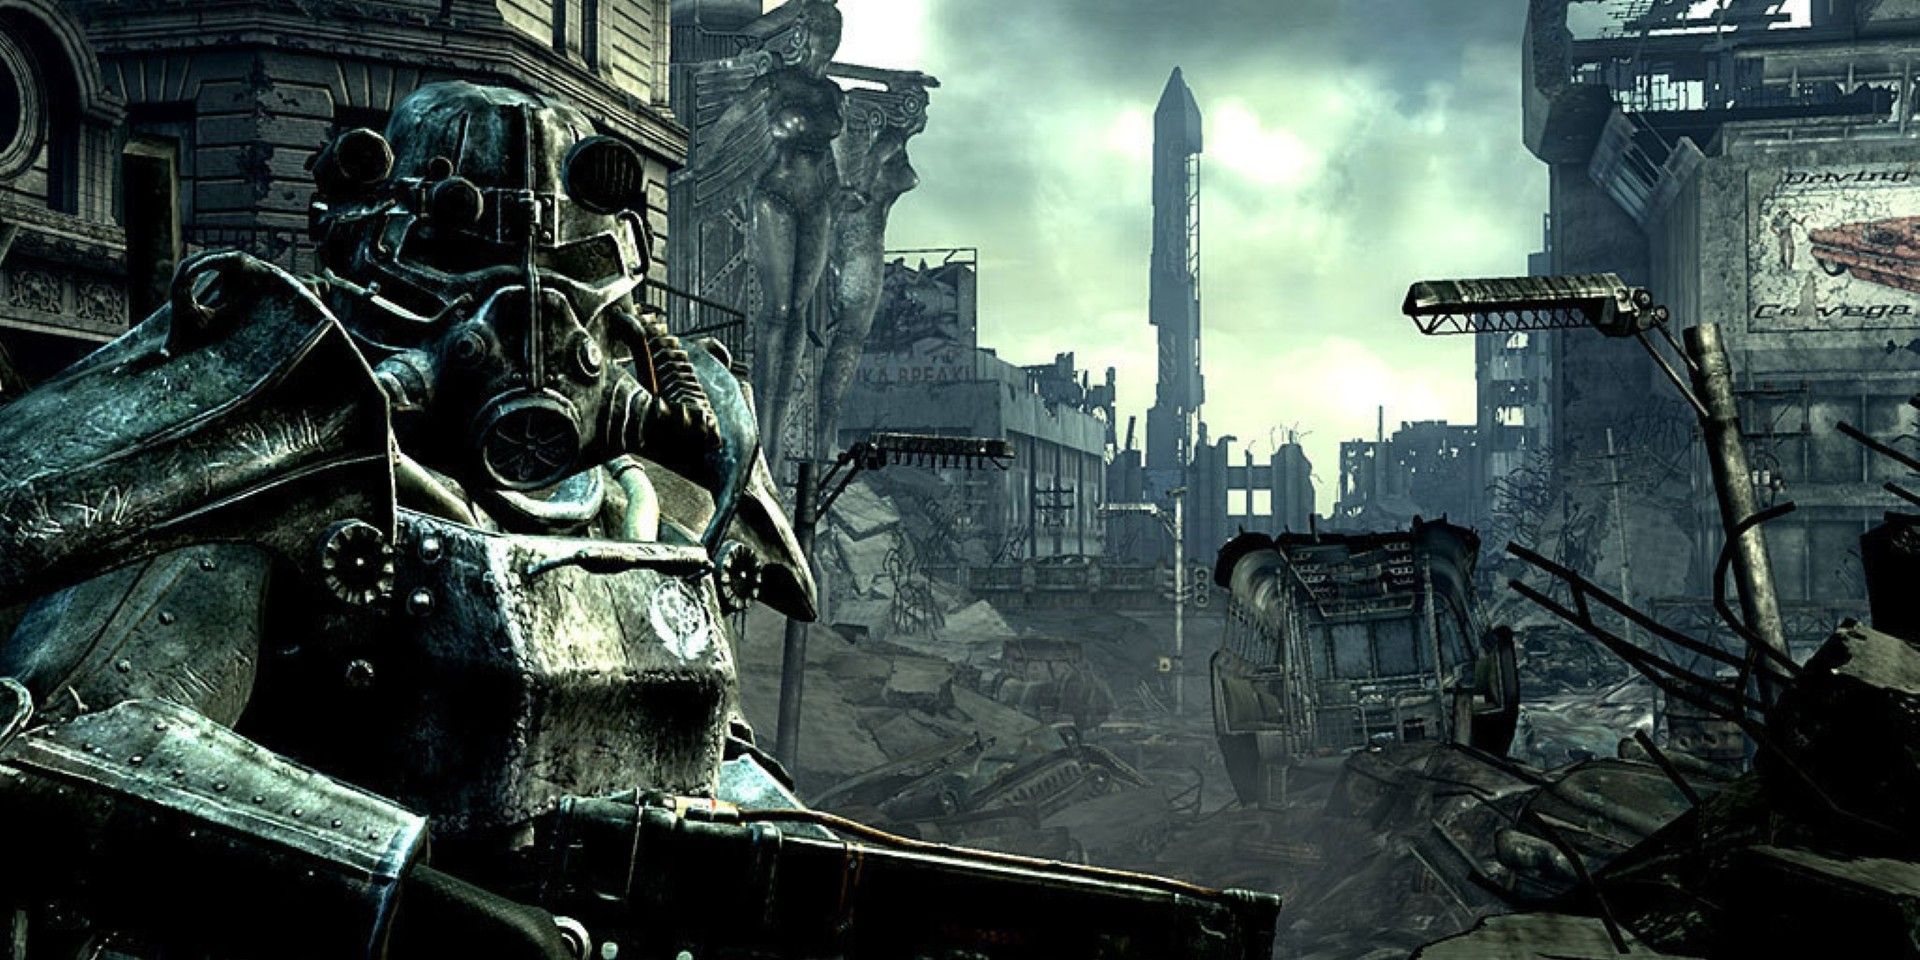 Wastelander em Power Suit inspecionando ruínas em Fallout 3